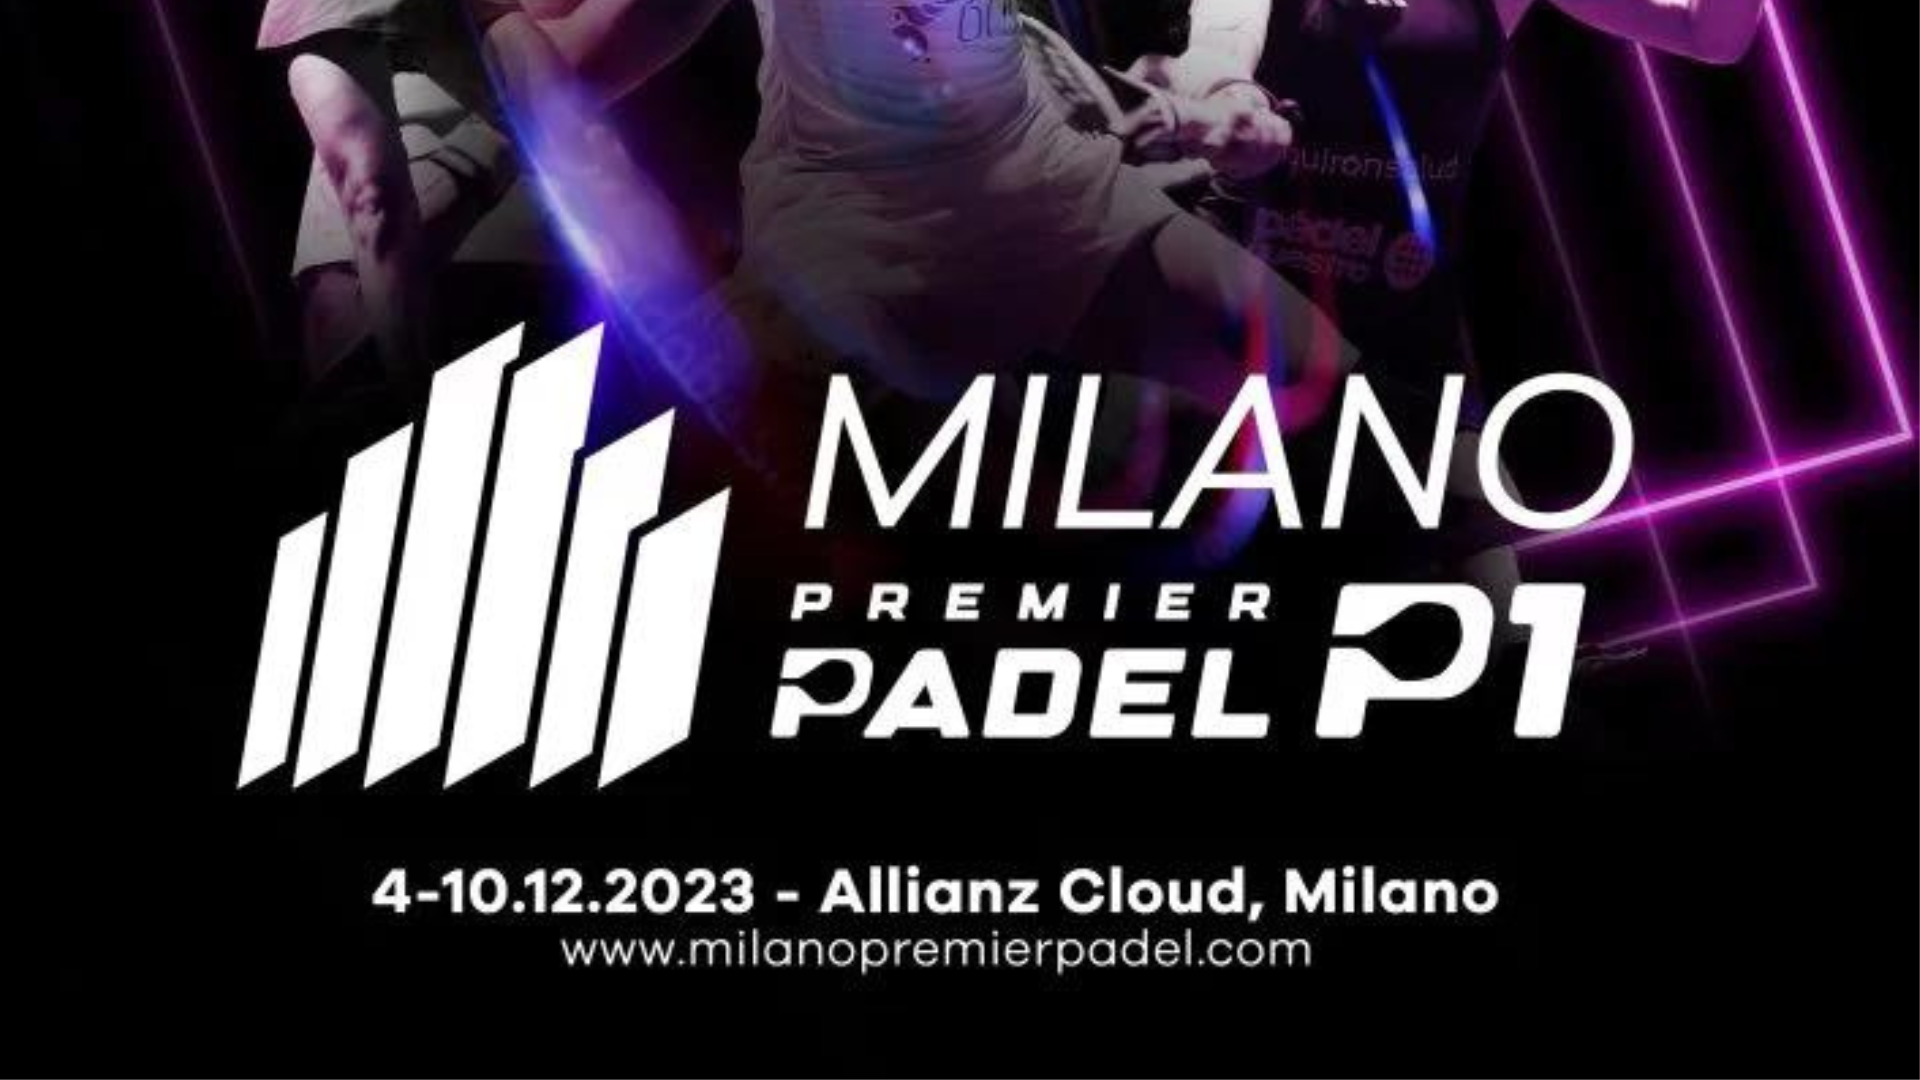 Premier Padel Milano P1 – Descubre los jugadores inscritos, con nuevas parejas del lado francés